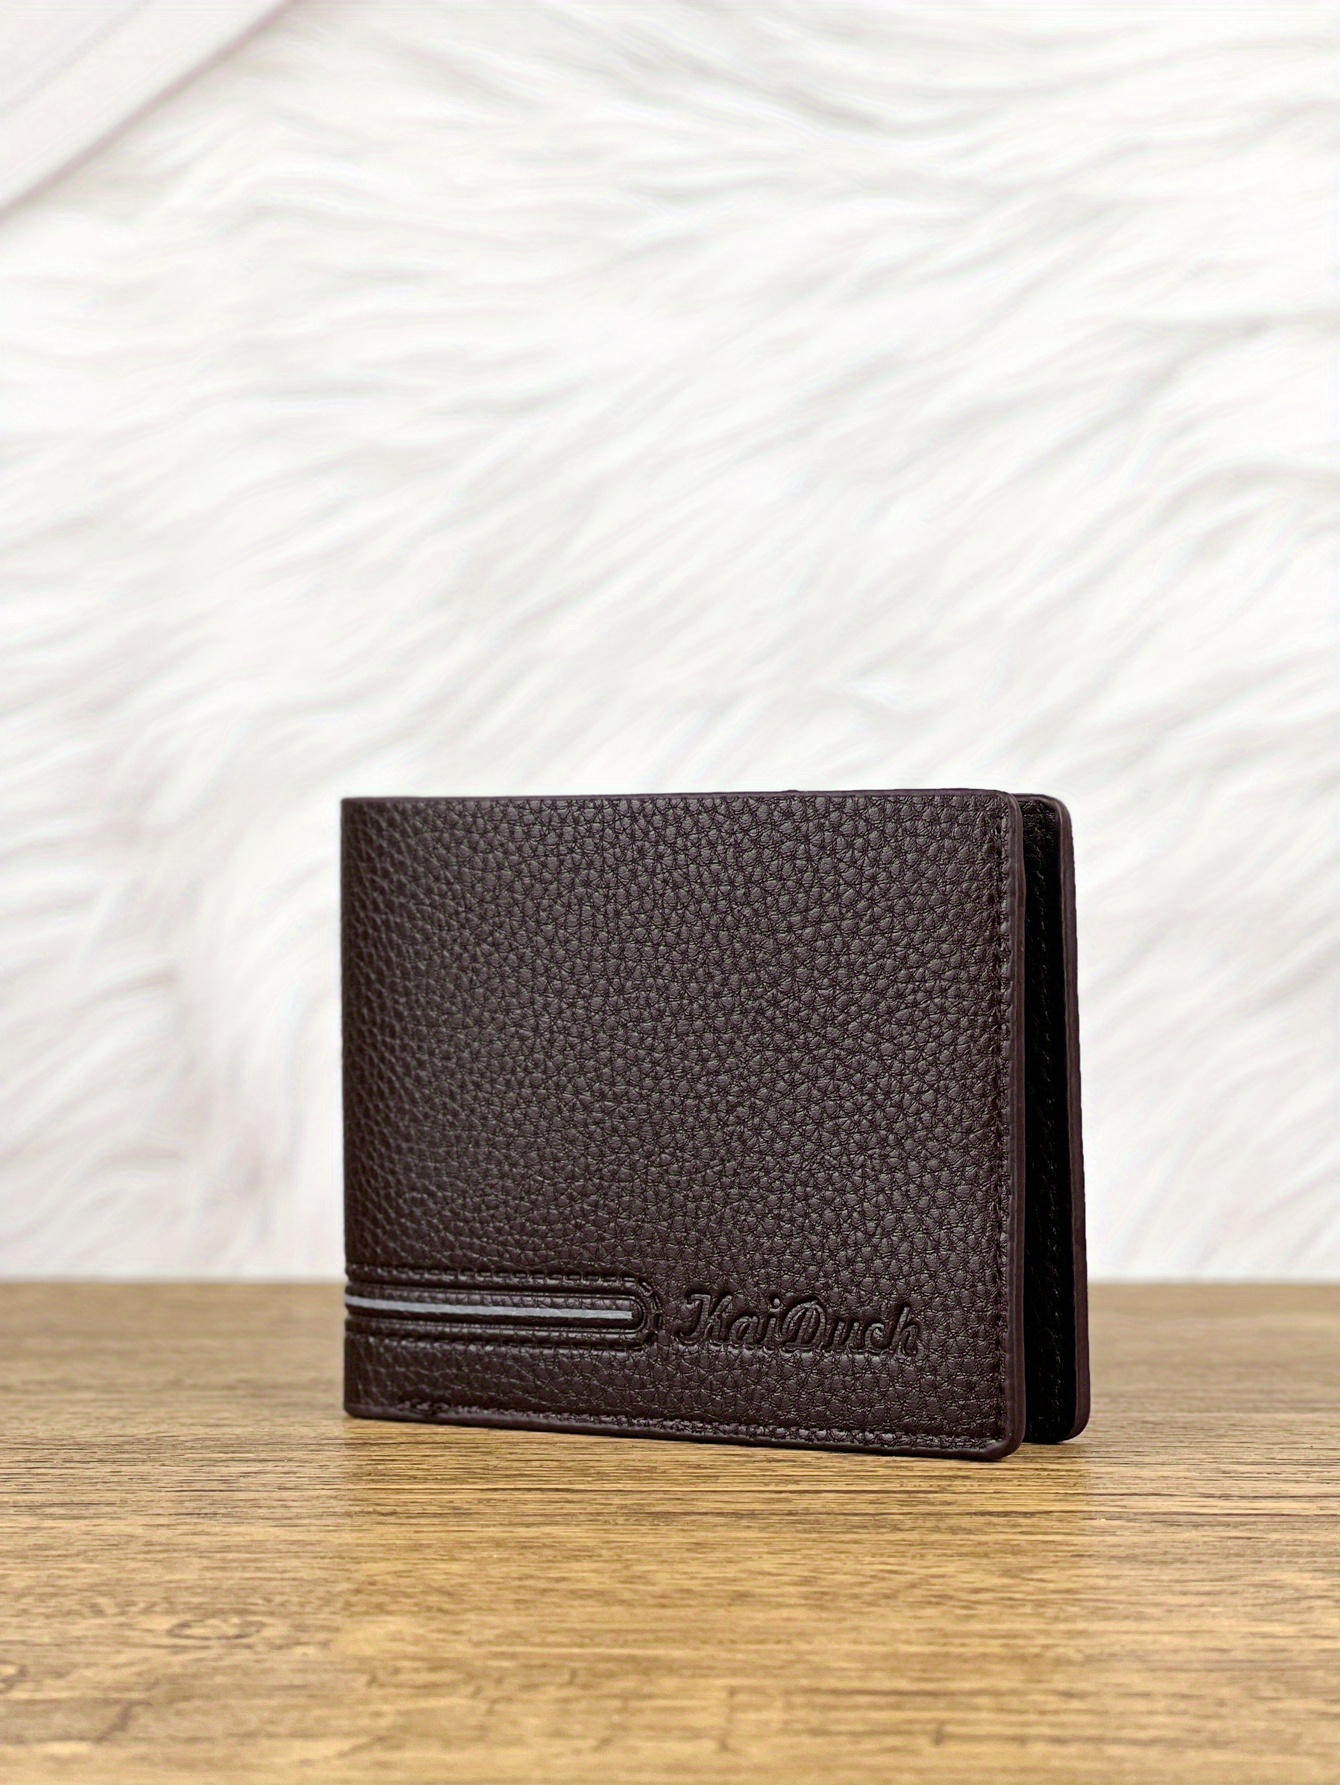 New Men's Wallet Short Crocodile Pattern Fashion Business Multi-Card PU Wallet Wallet Bank ID Card